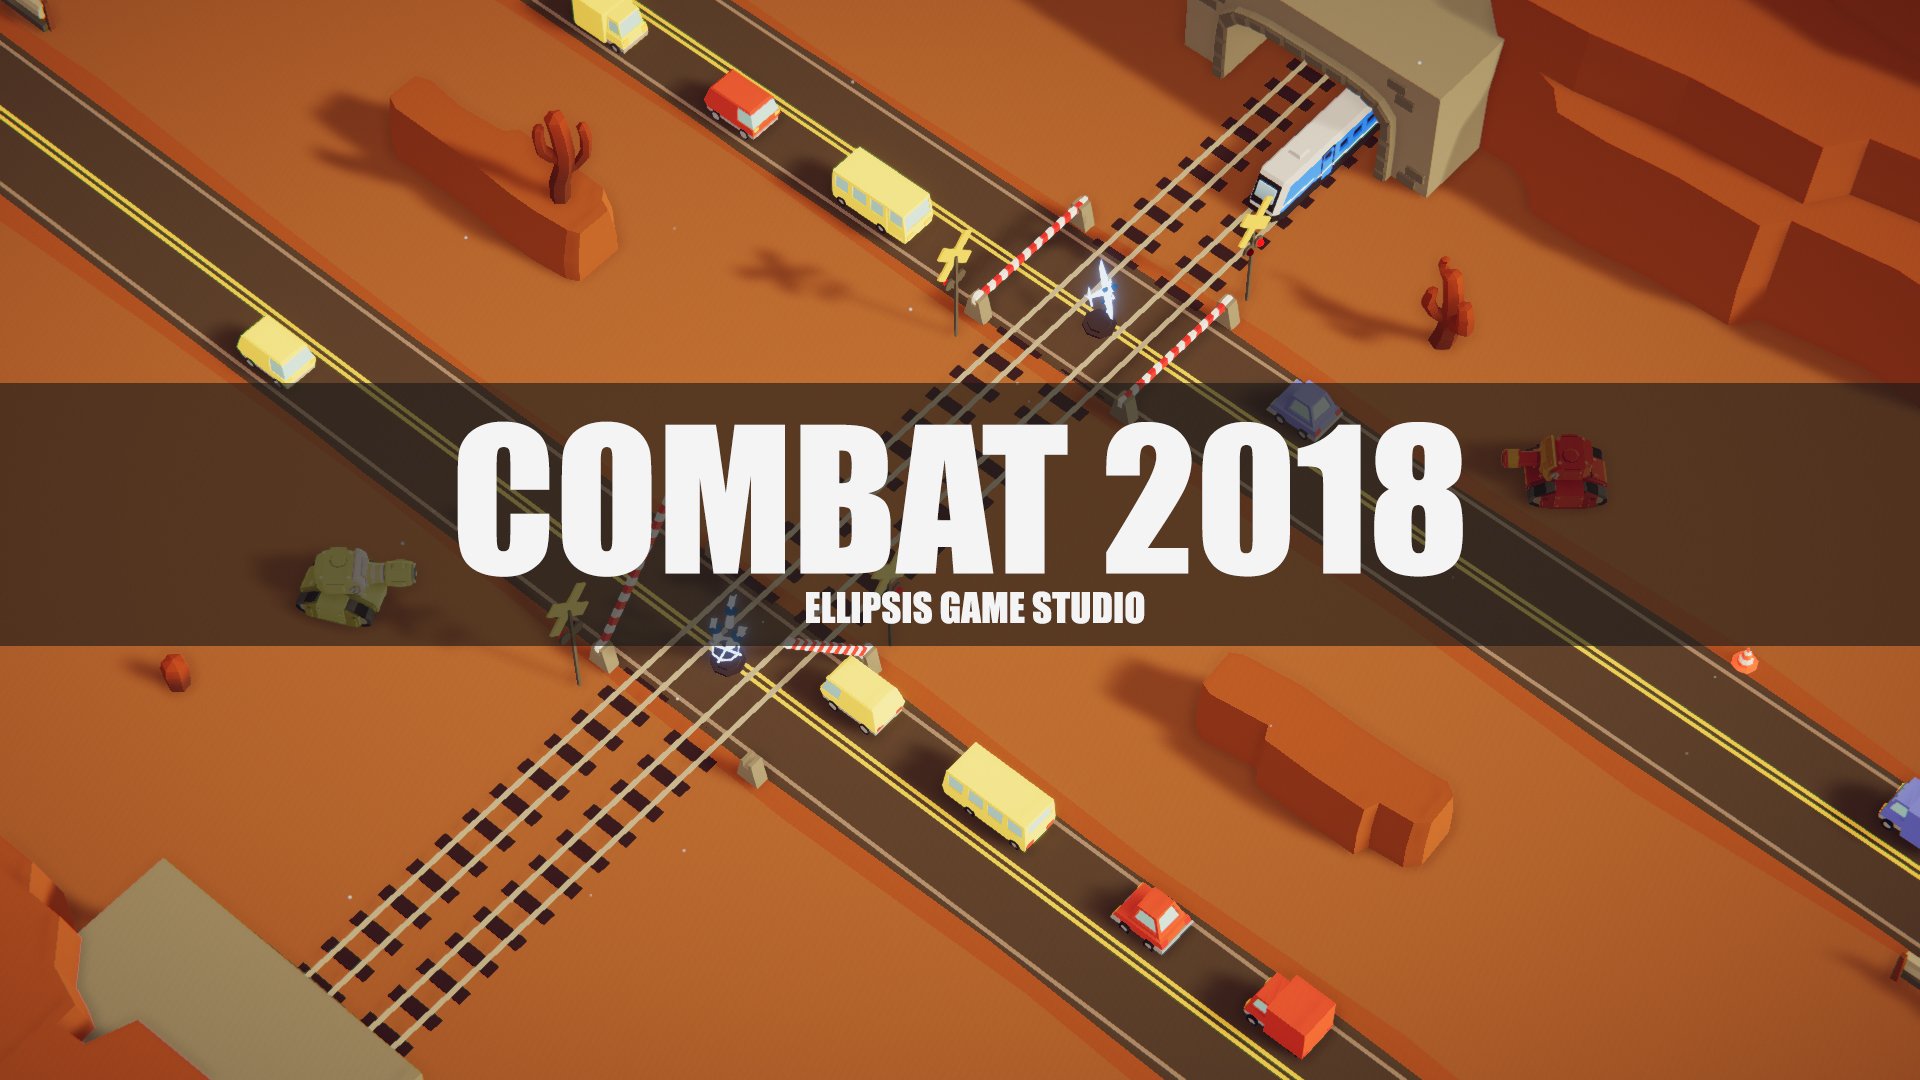 Combat 2018